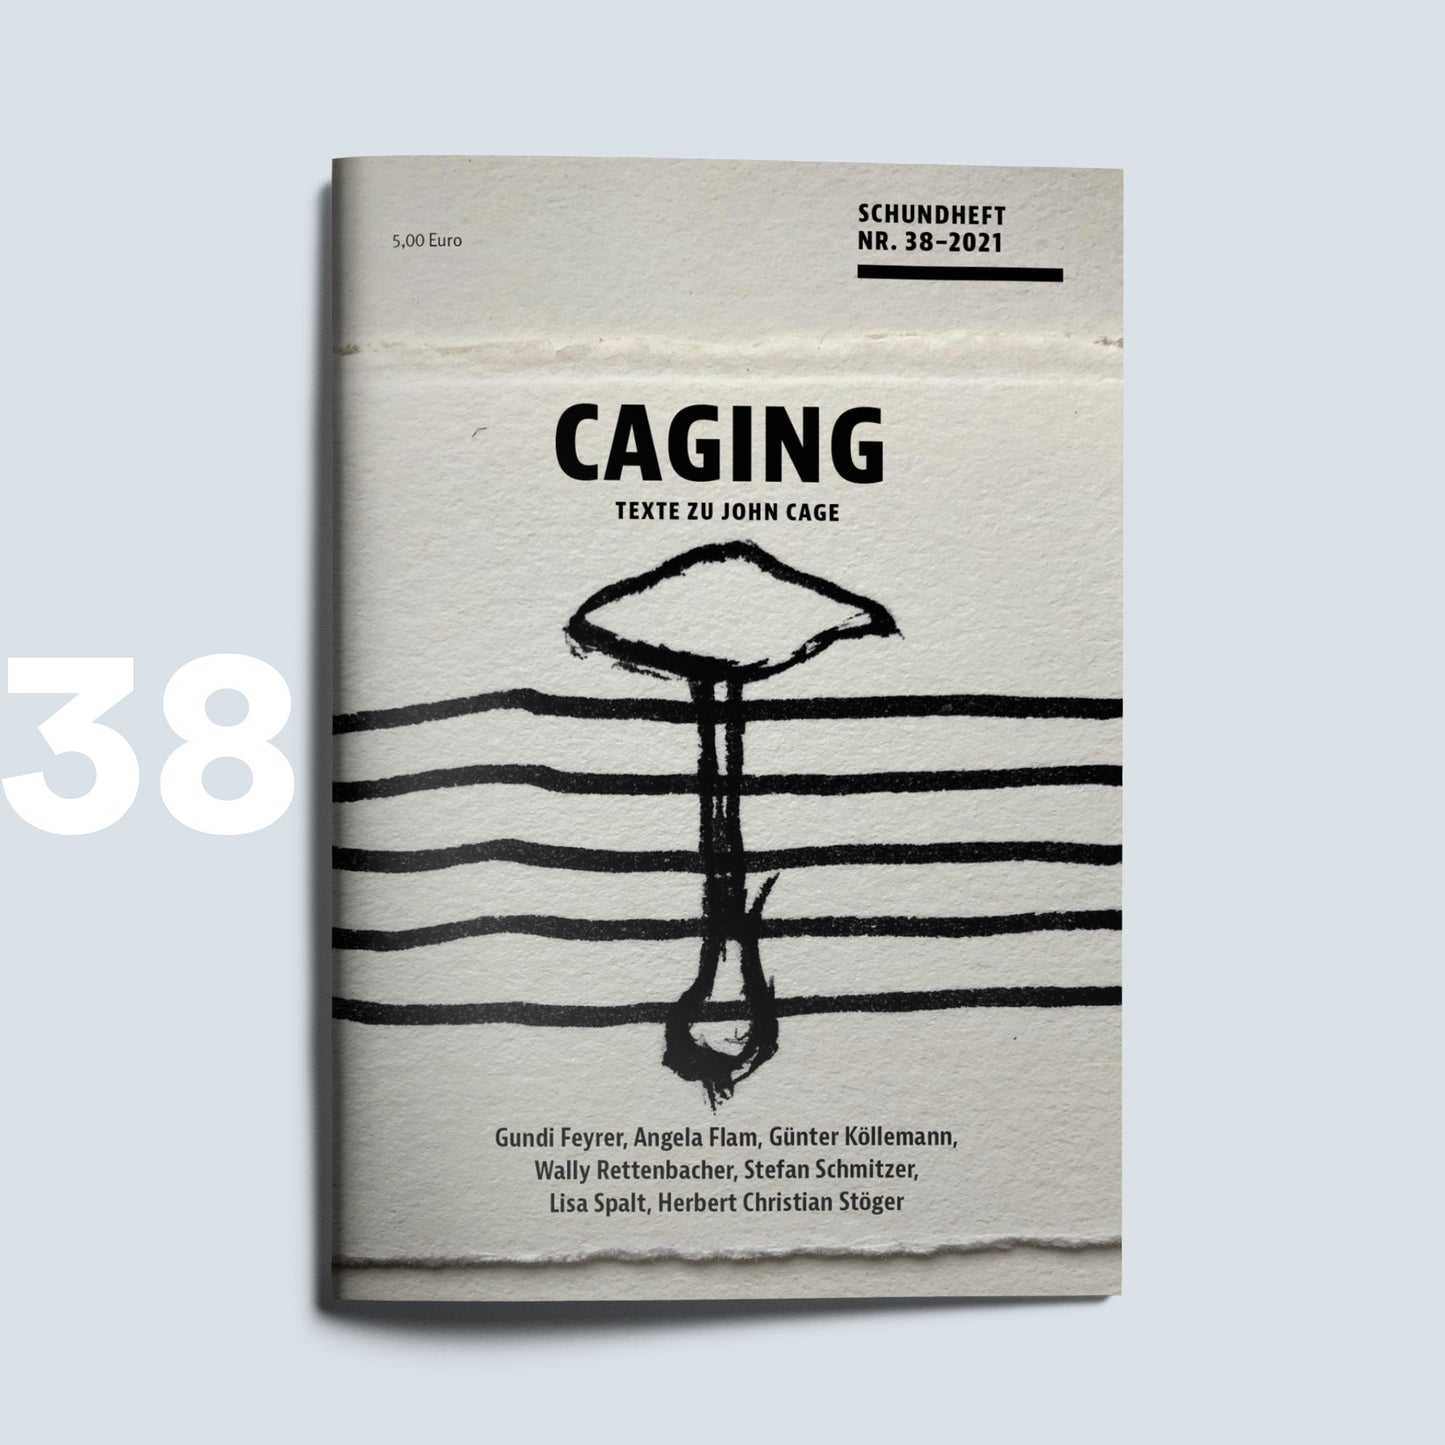 Schundheft Nr. 38 "Caging"